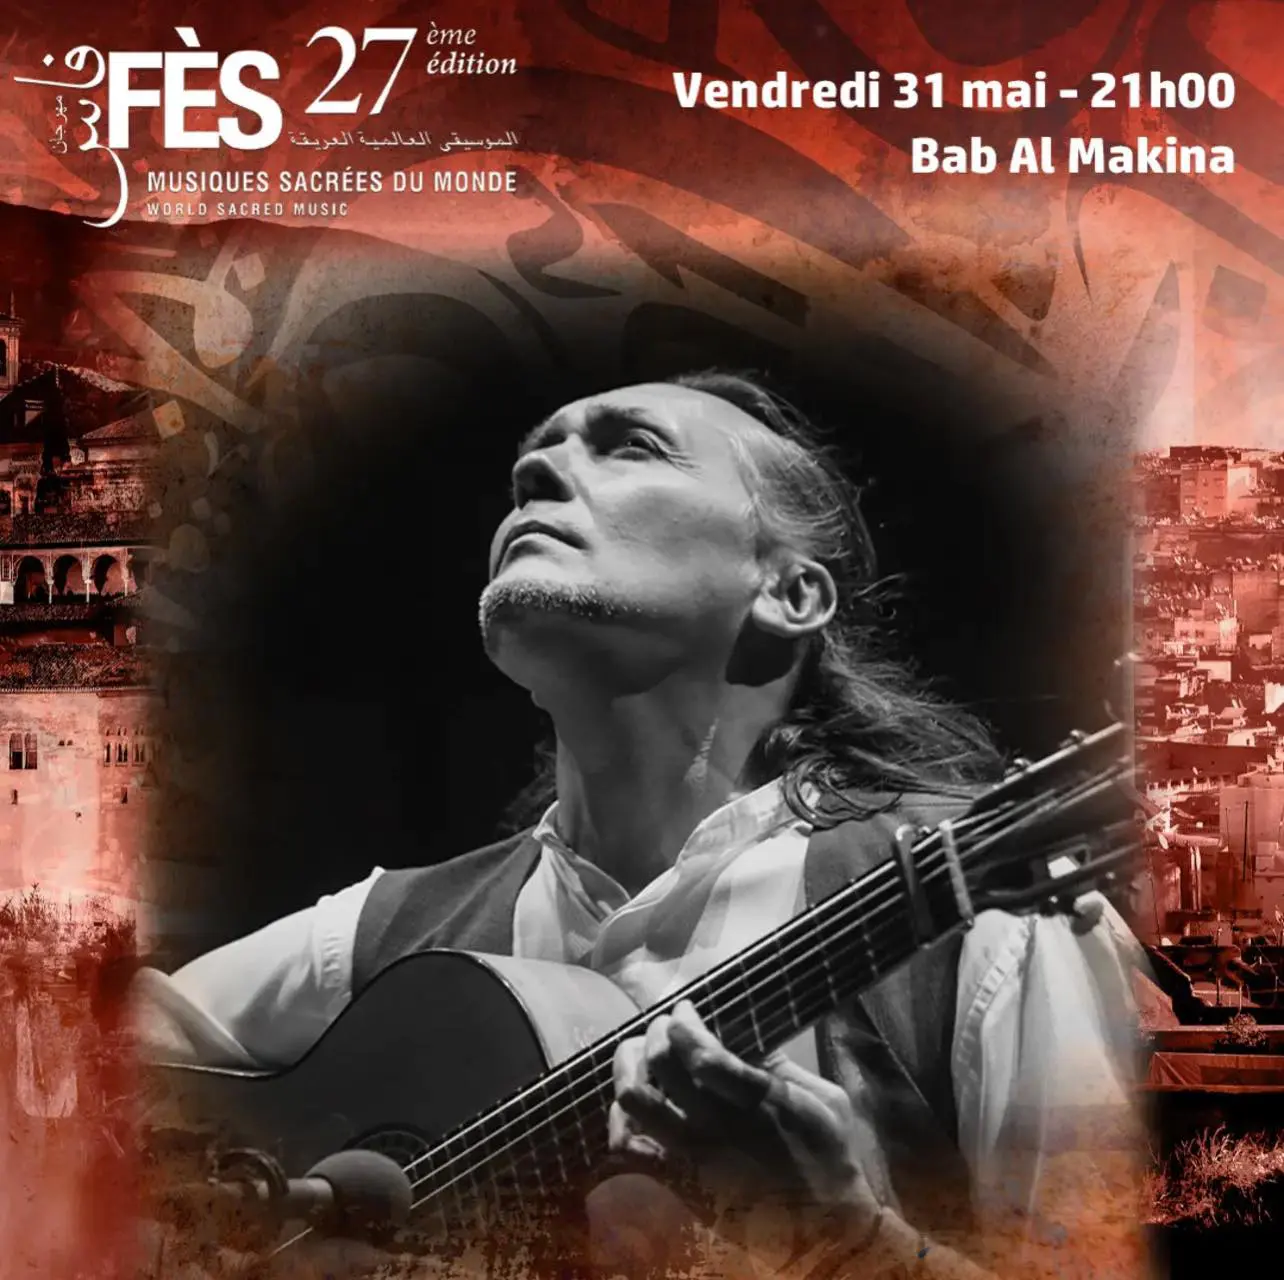 Experiencias flamencas en el Festival de Músicas Sagradas de Fes